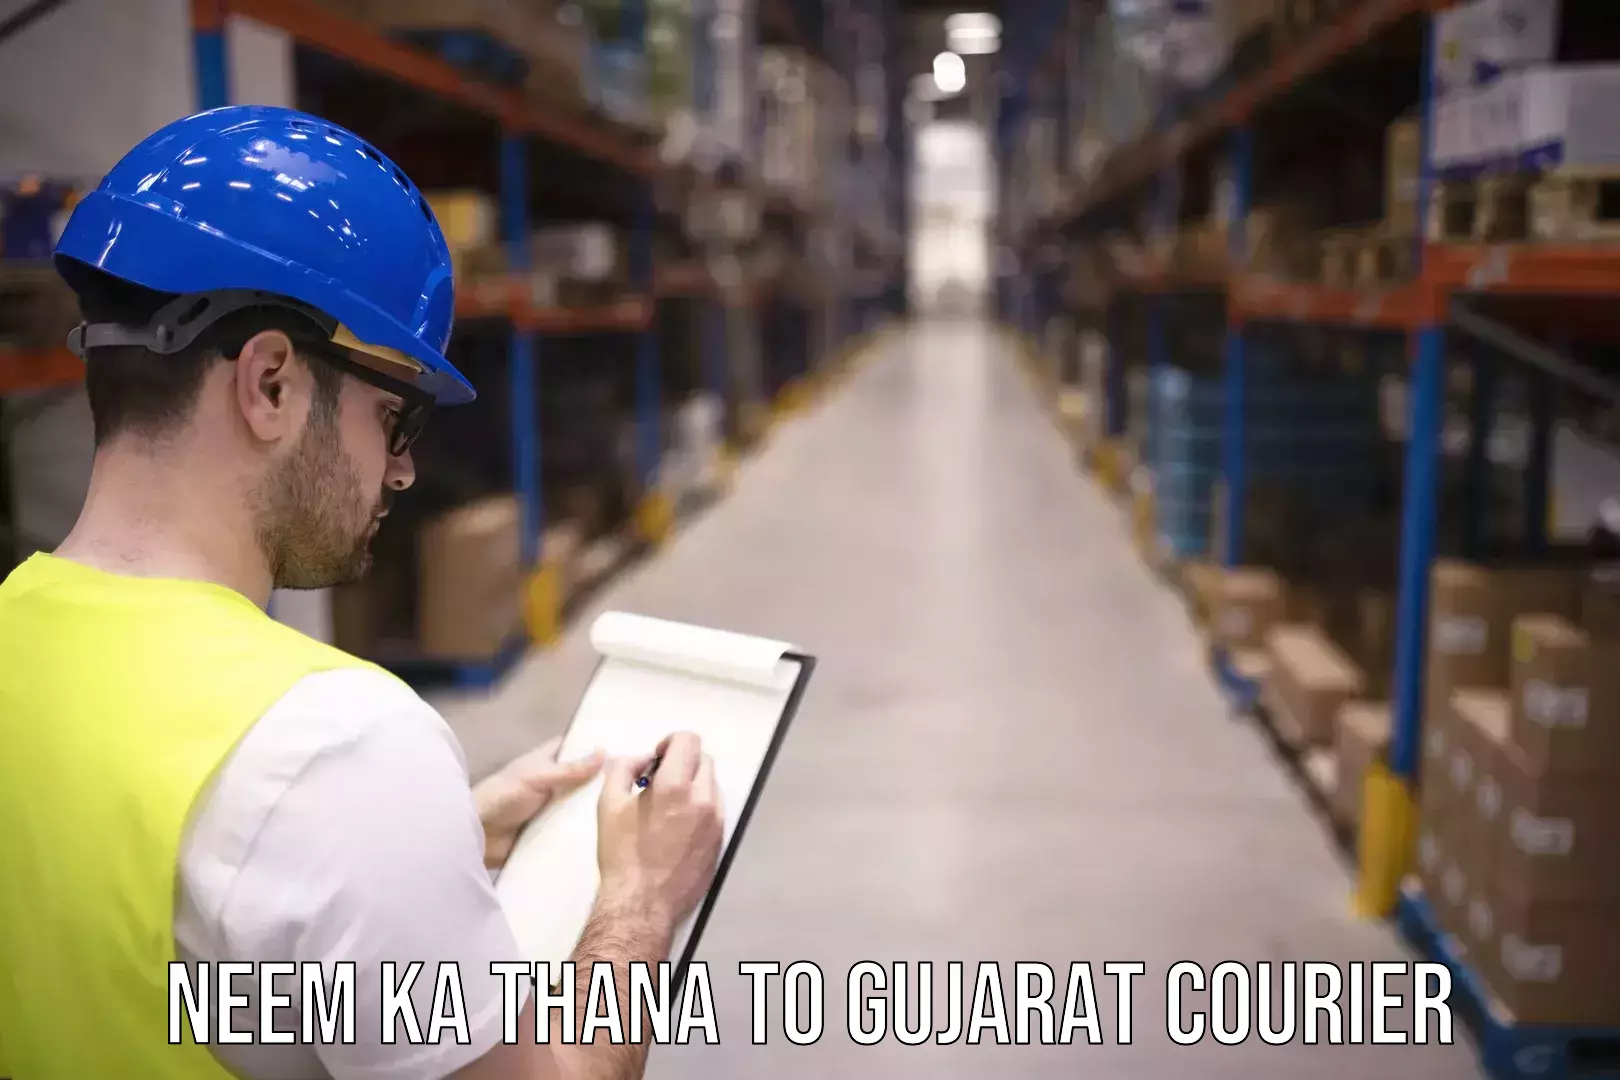 24-hour courier service Neem ka Thana to Gujarat